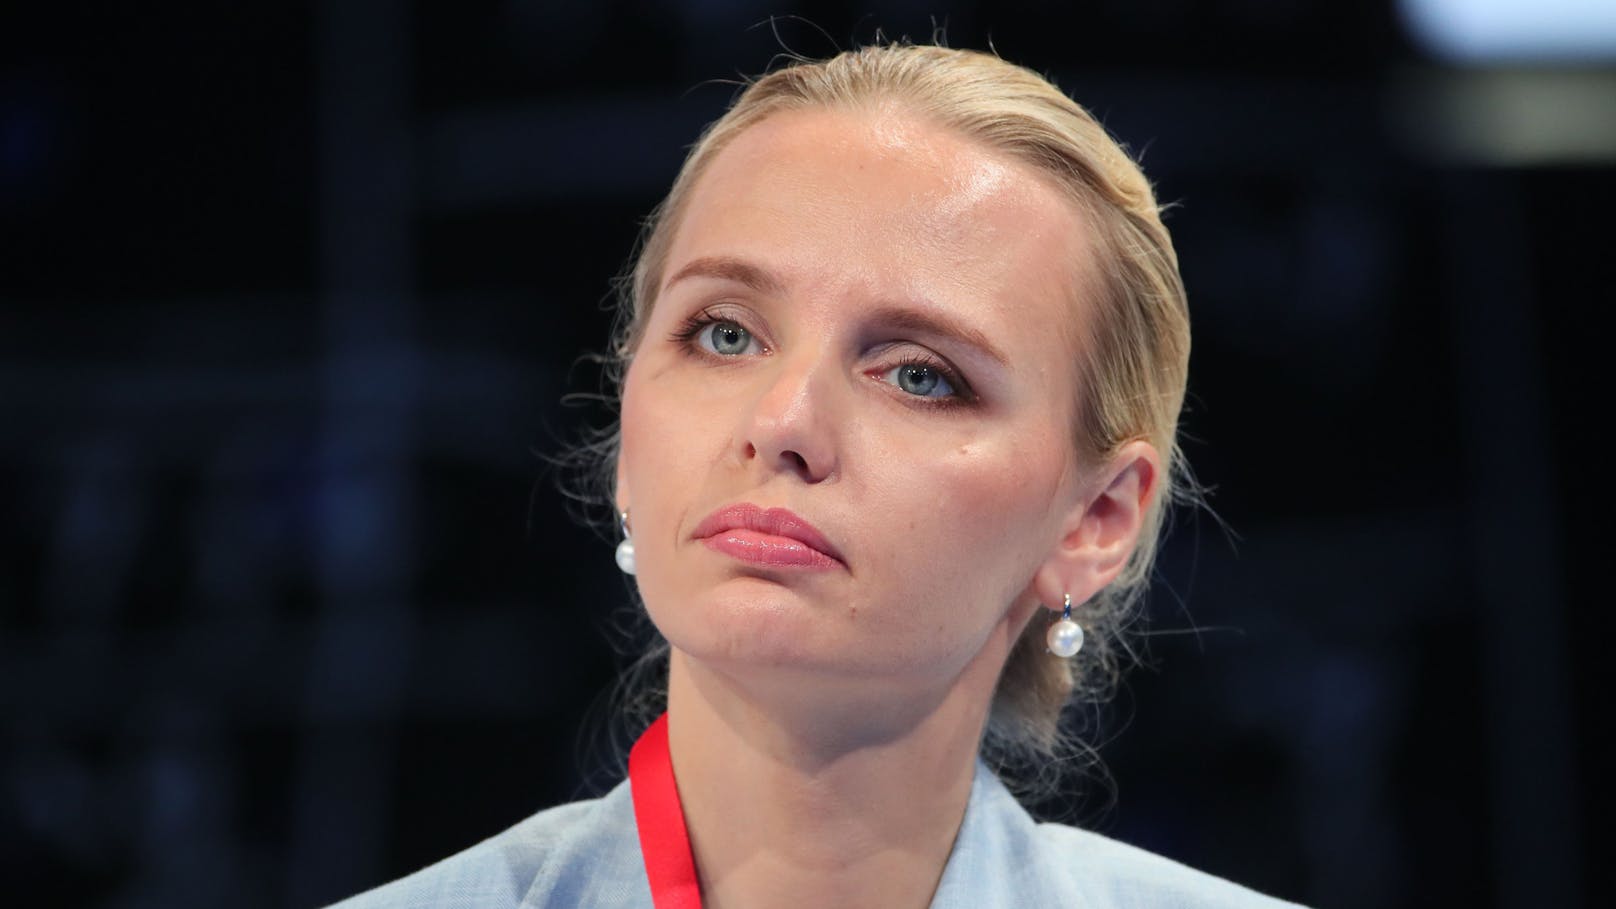 Putin älteste Tochter Maria Worontsowa wurde 1985 im ehemaligen Leningrad (heute Sankt Petersburg) geboren. Die heute 36-Jährige hat Biologie studiert und ist heute als Genetikerin tätig.